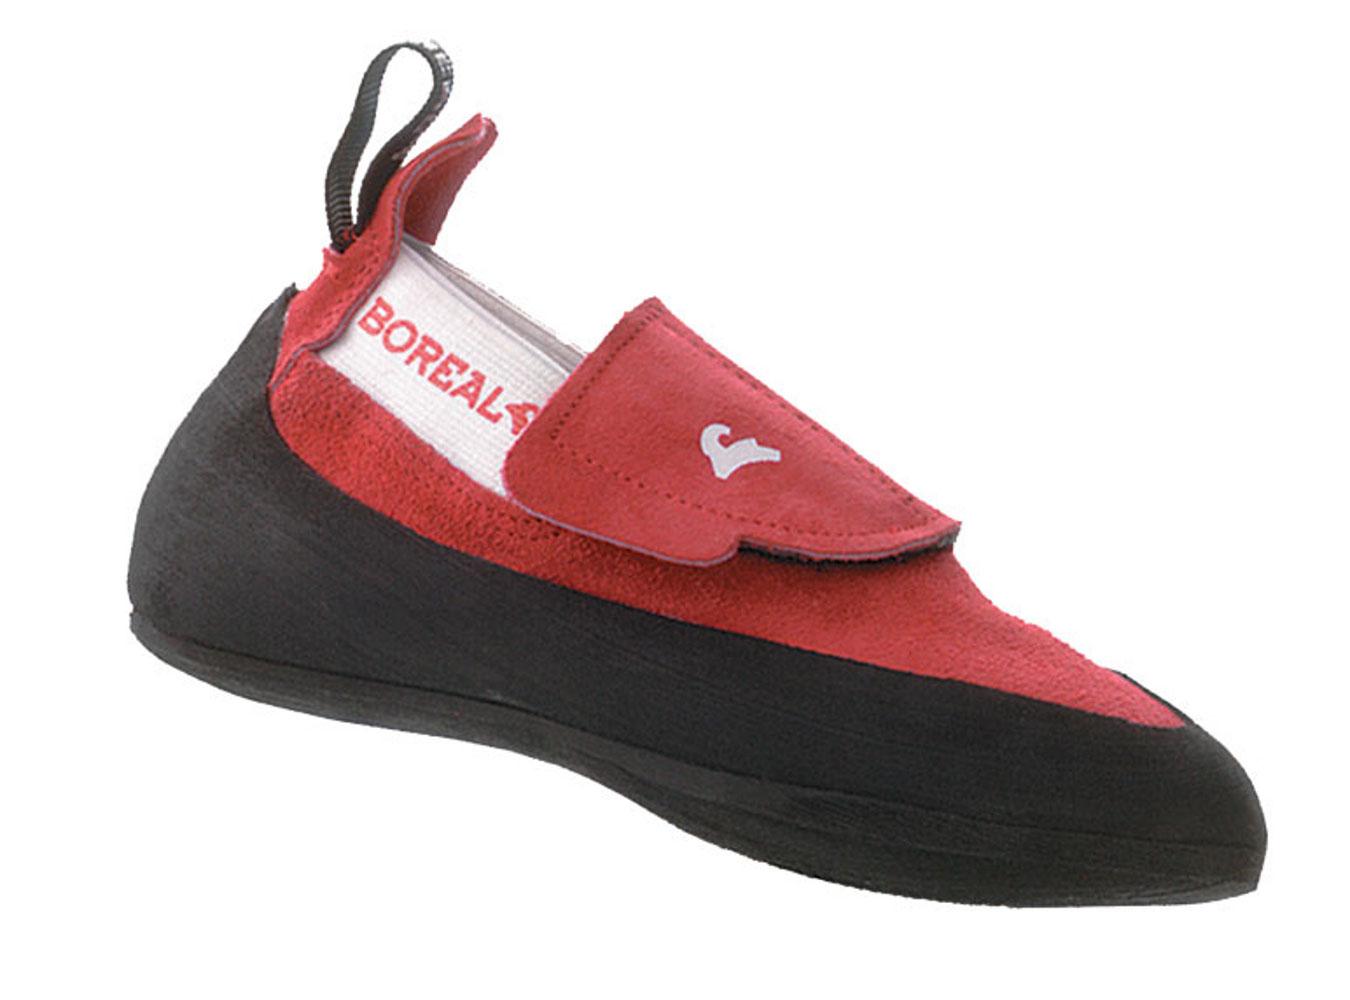 Foto Boreal Ninja Junior Zapatillas para escalada niños rojo, 27